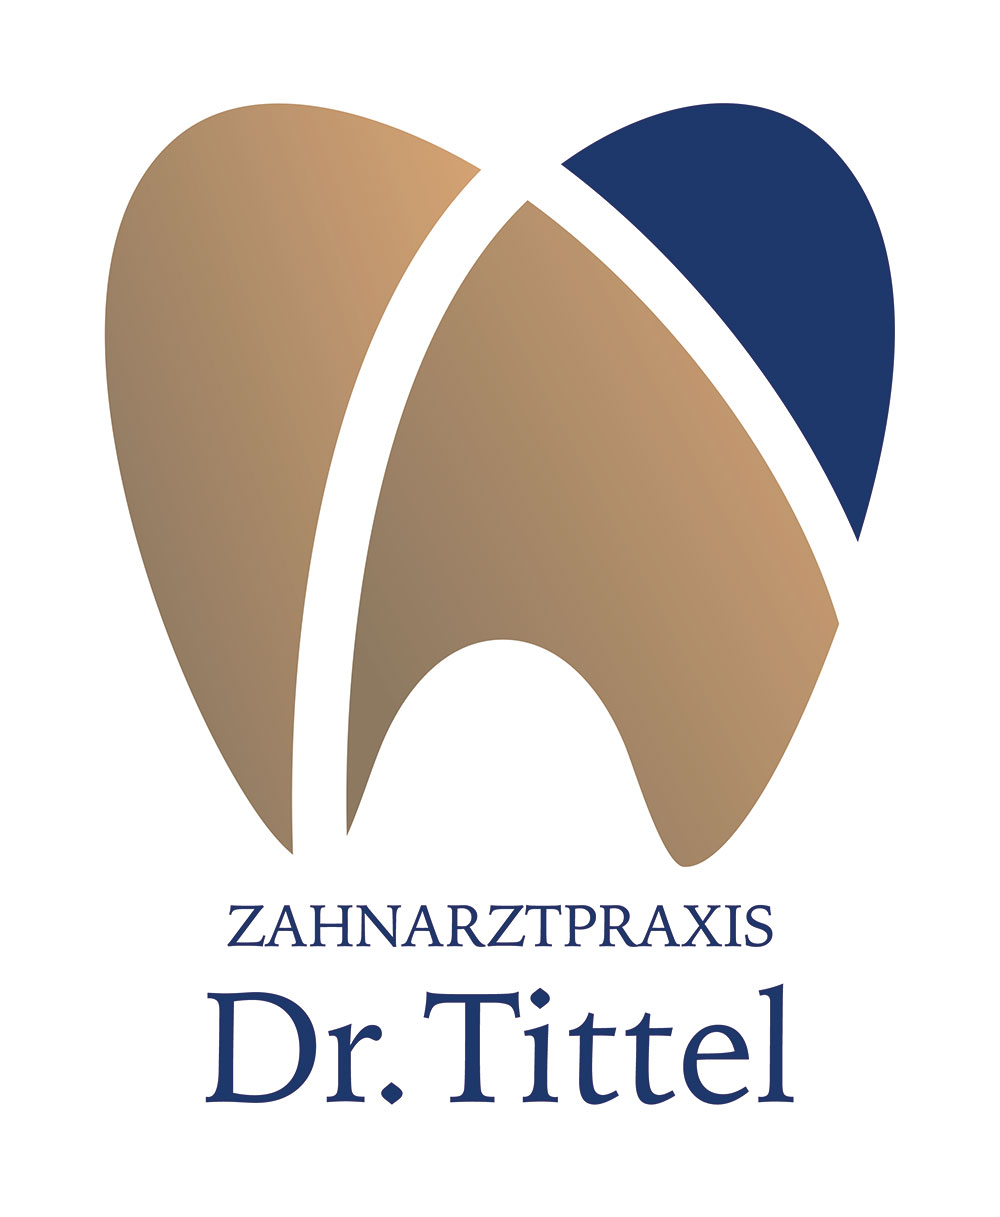 Zahnarztpraxis Dr. Tittel